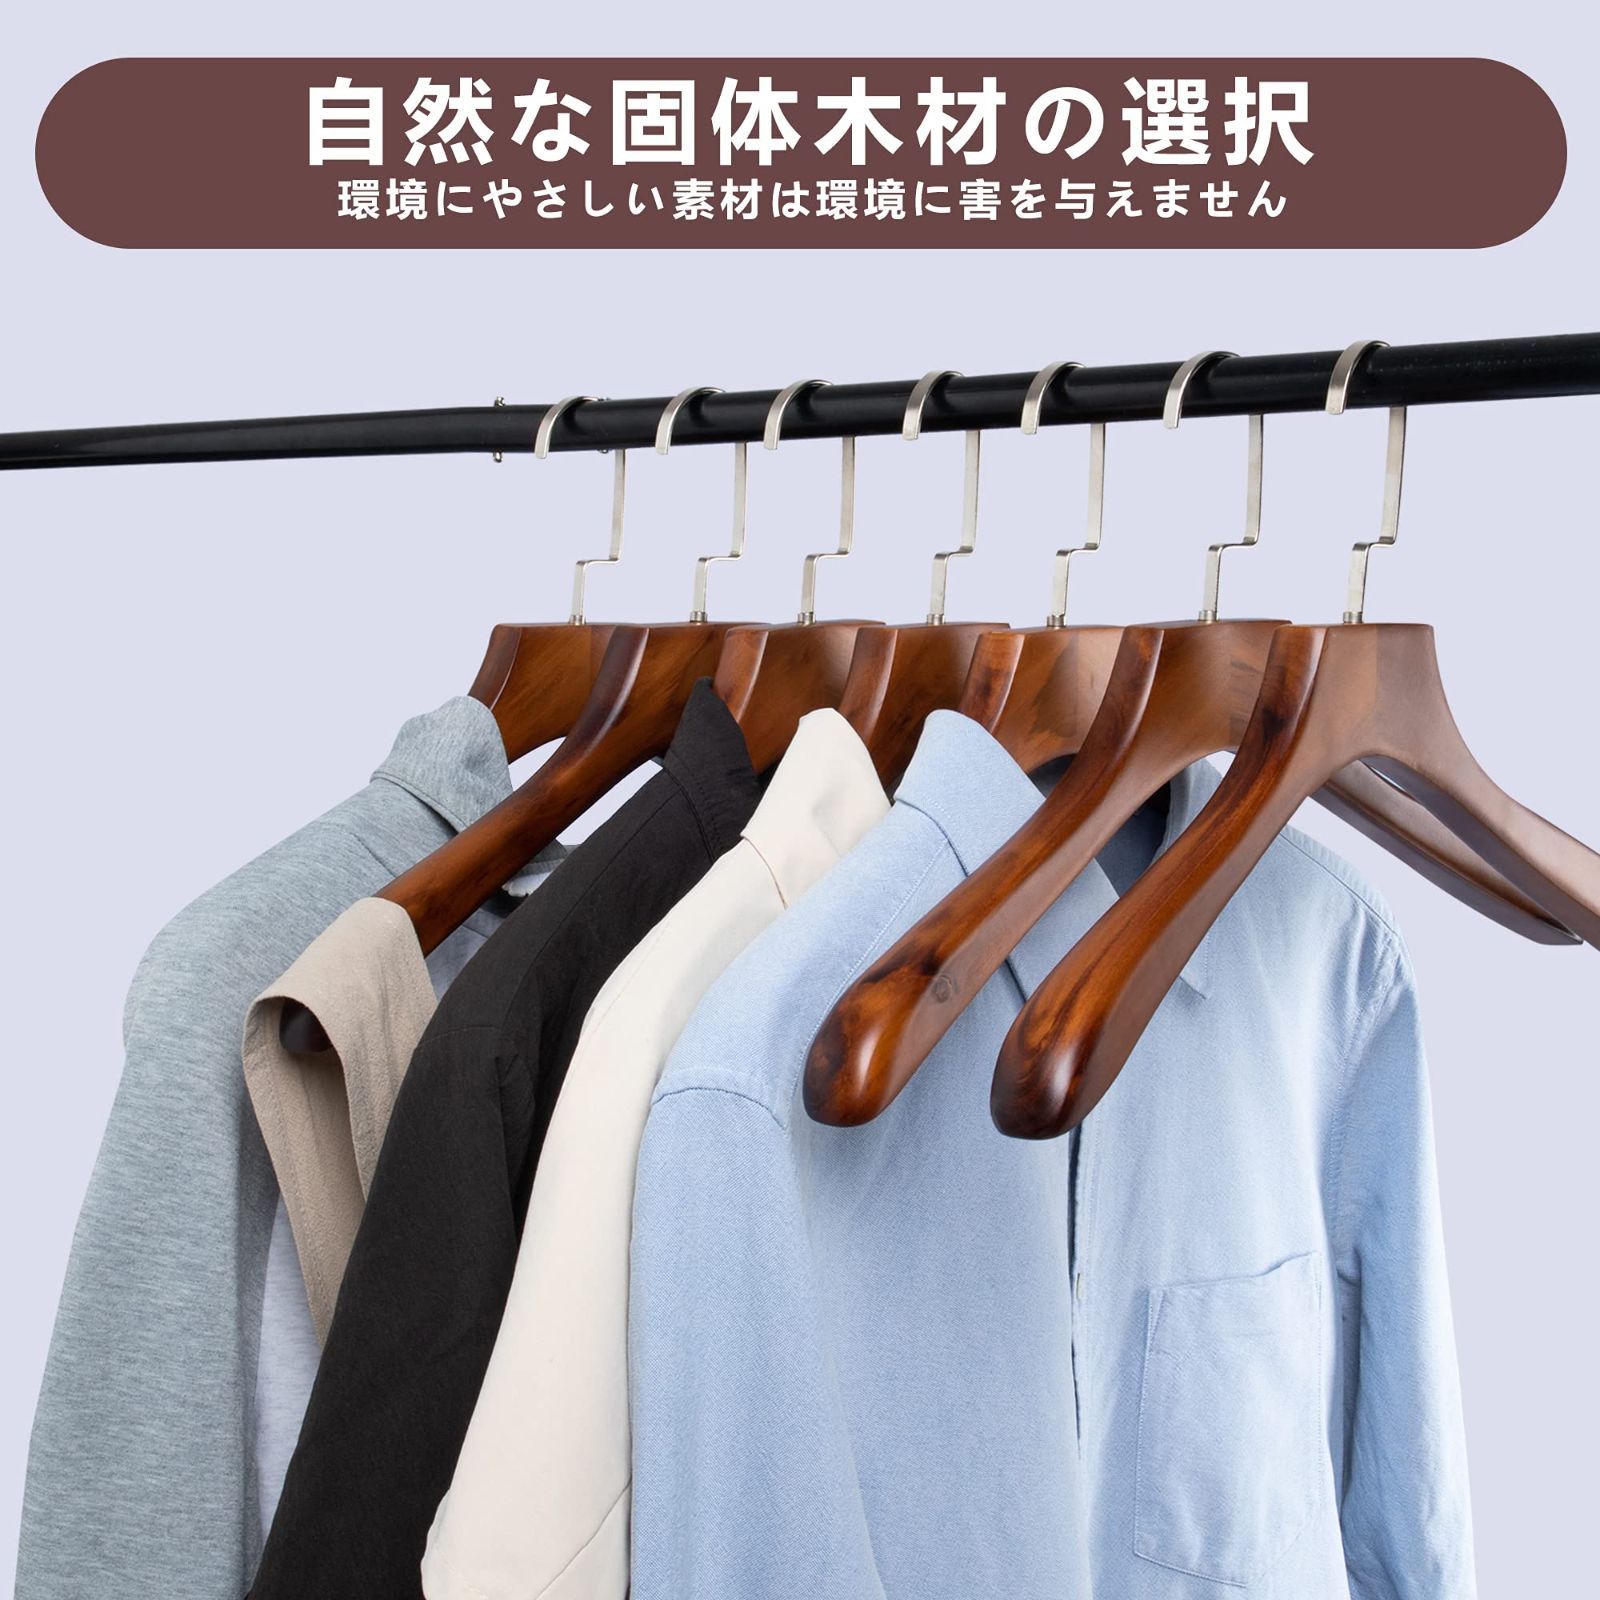 【色: 胡桃色/6本】木製ハンガーセット 洋服 スーツ コート用ハンガー 手作